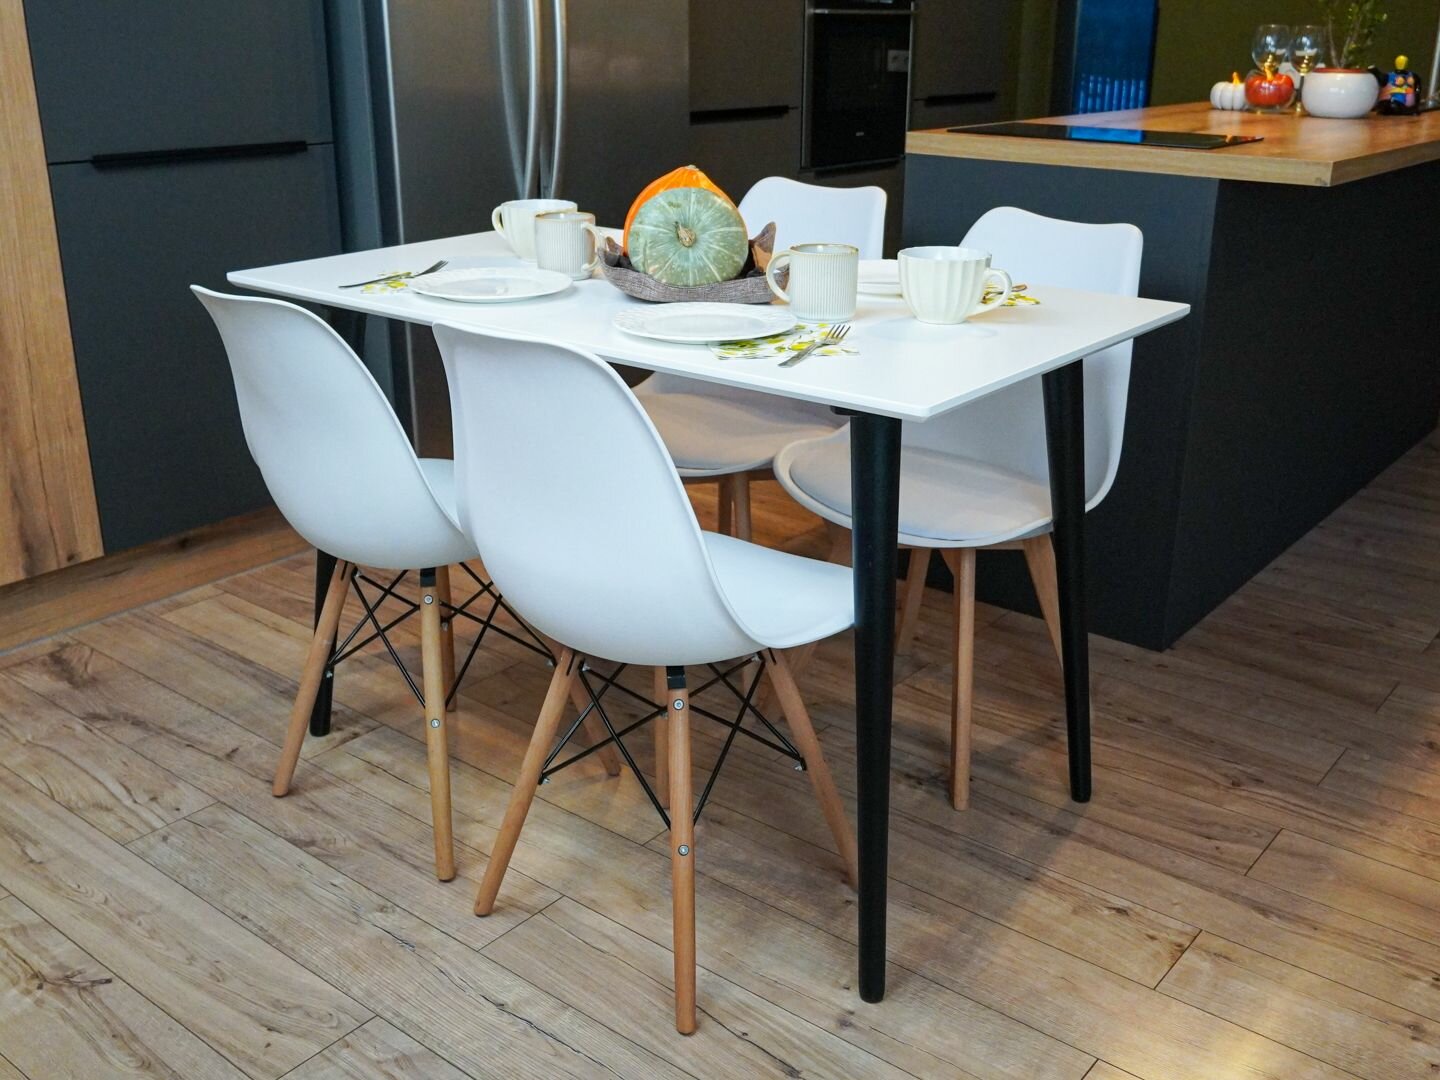 Стол кухонный белый обеденный прямоугольный раздвижной кварта 120см х 70см с черными ножками